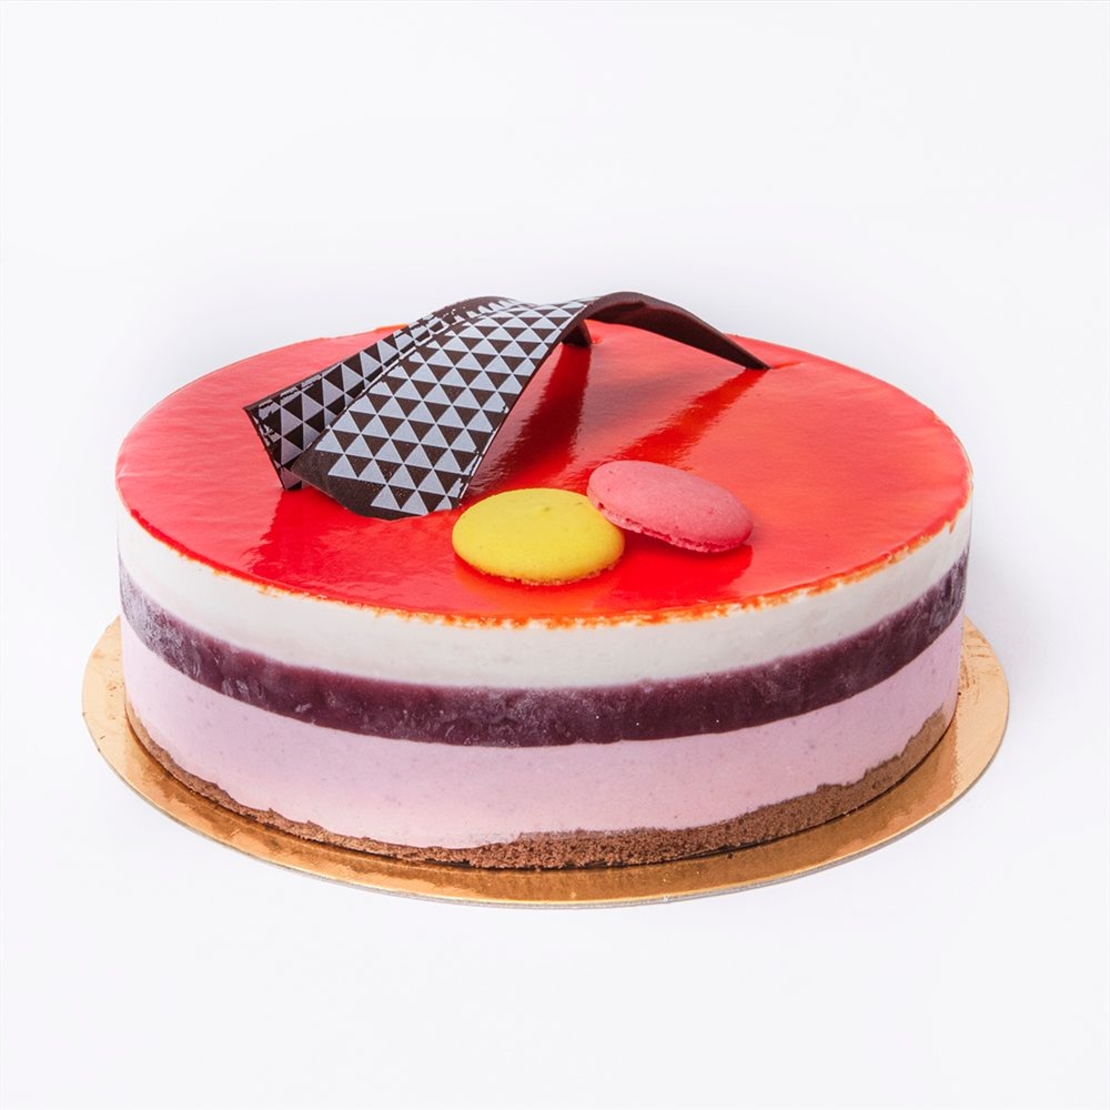 Berry cake | Halavi - Badatz